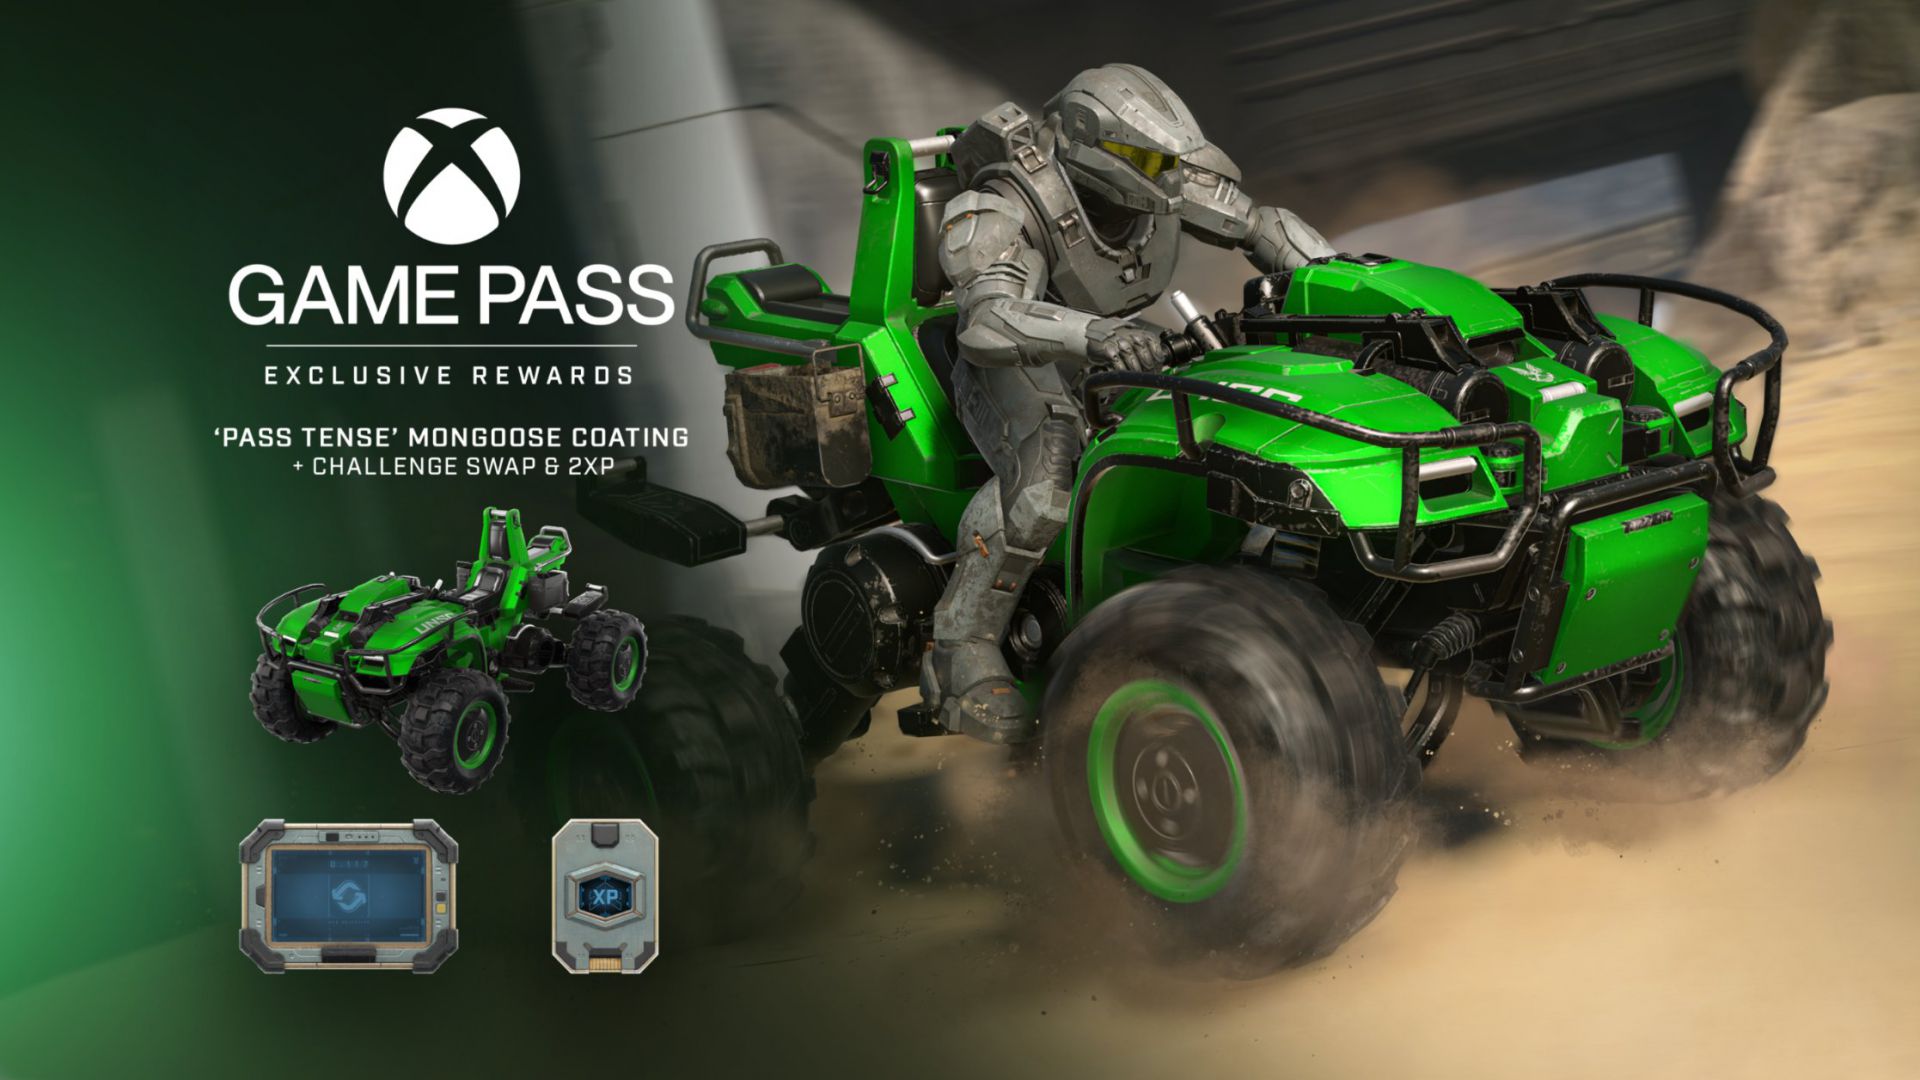 La recompensa mensual de Halo Infinite para usuarios con Xbox Game Pass ya está disponible - El nuevo paquete de recompensas mensual de Halo Infinite para jugadores con suscripción a Xbox Game Pass ya está disponible para reclamar.